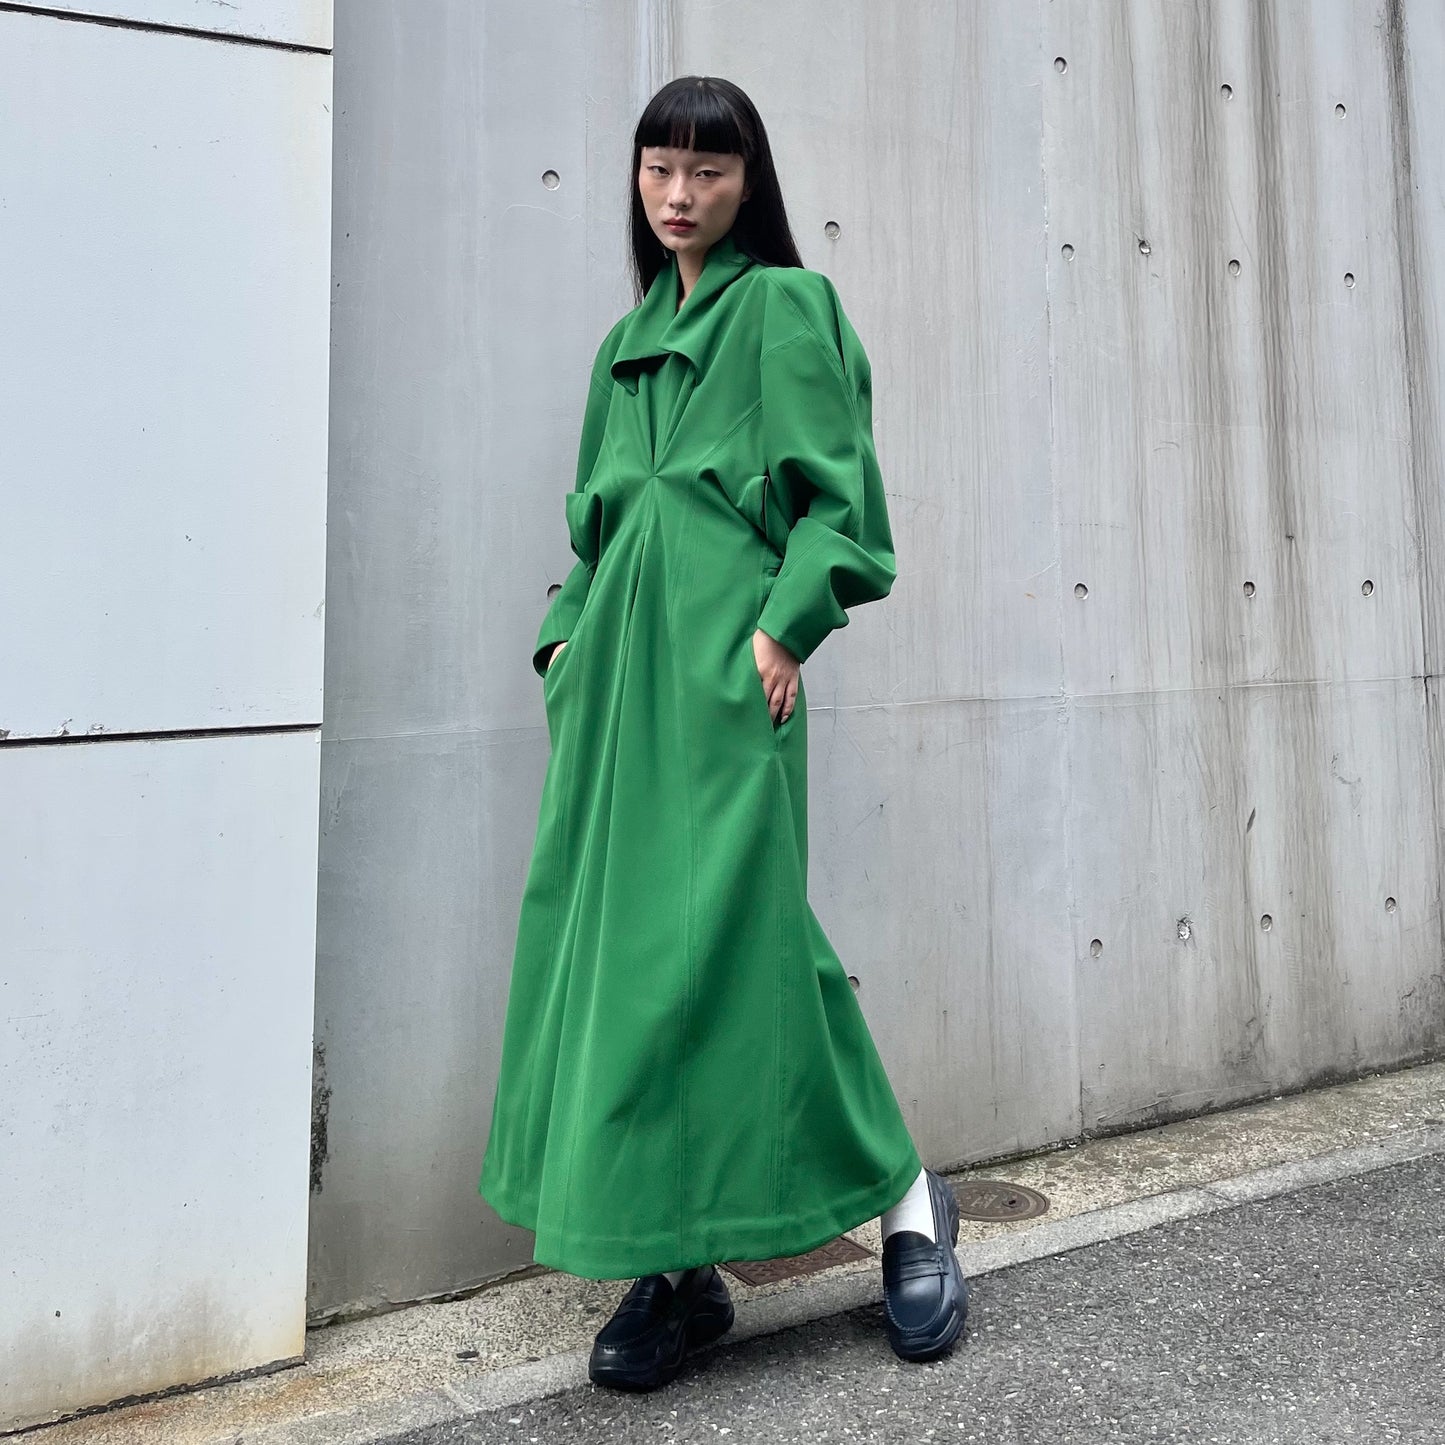 AKIKOAOKI / Cubism dress - daily